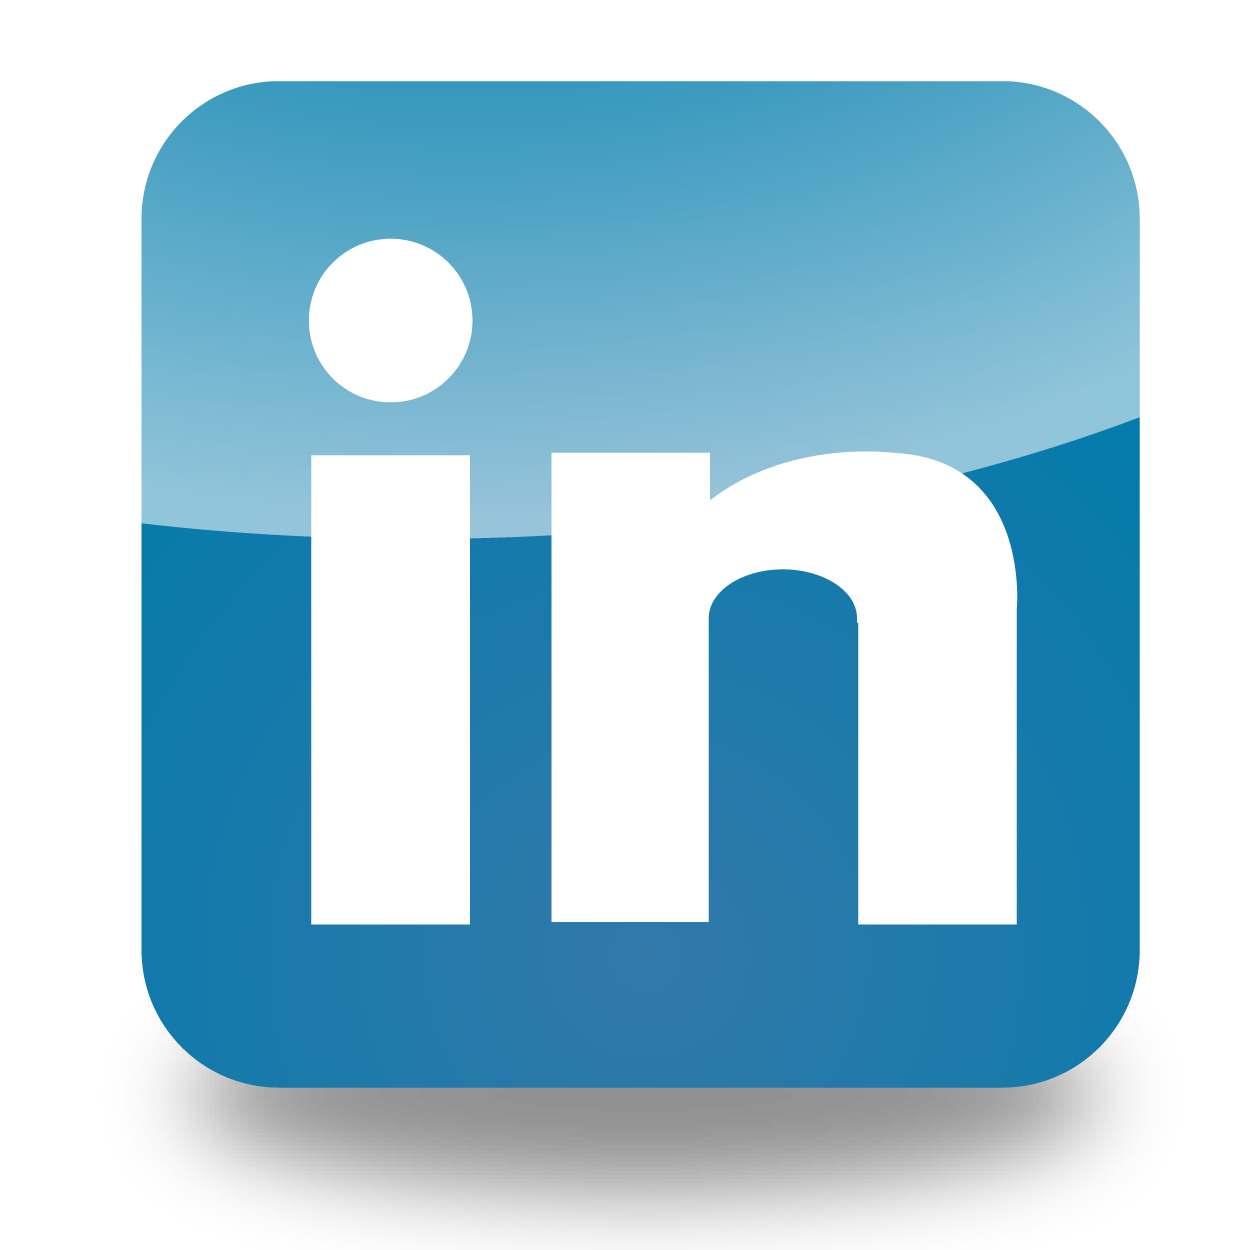 Linkedin Logo Linkedin Logo Png 50png Photo 13629 Pnguk | Images and ...